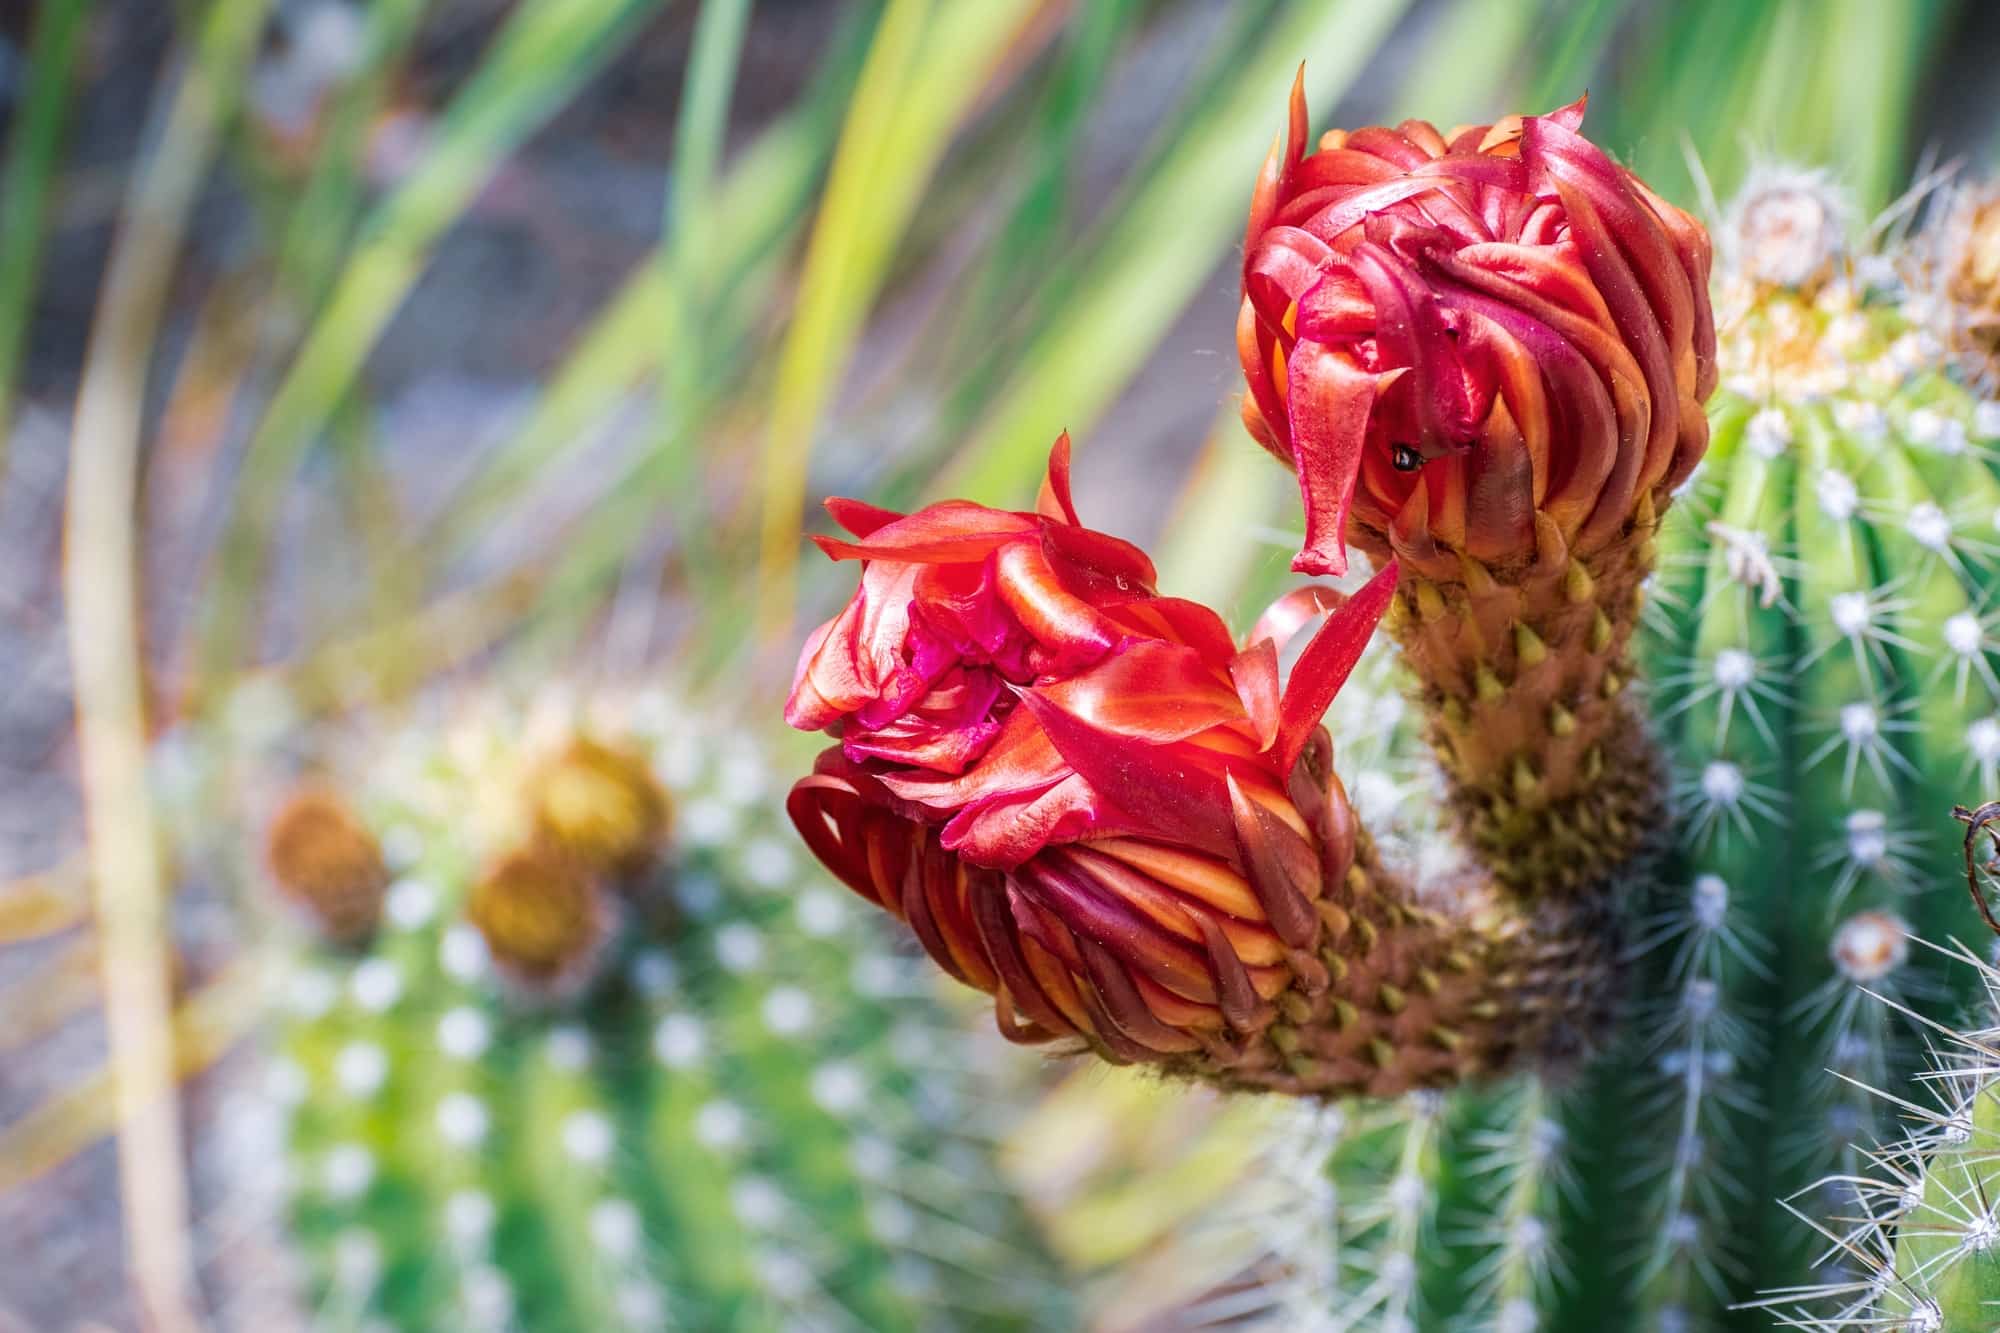 Cactus, plantes succulentes : quelle différence ?